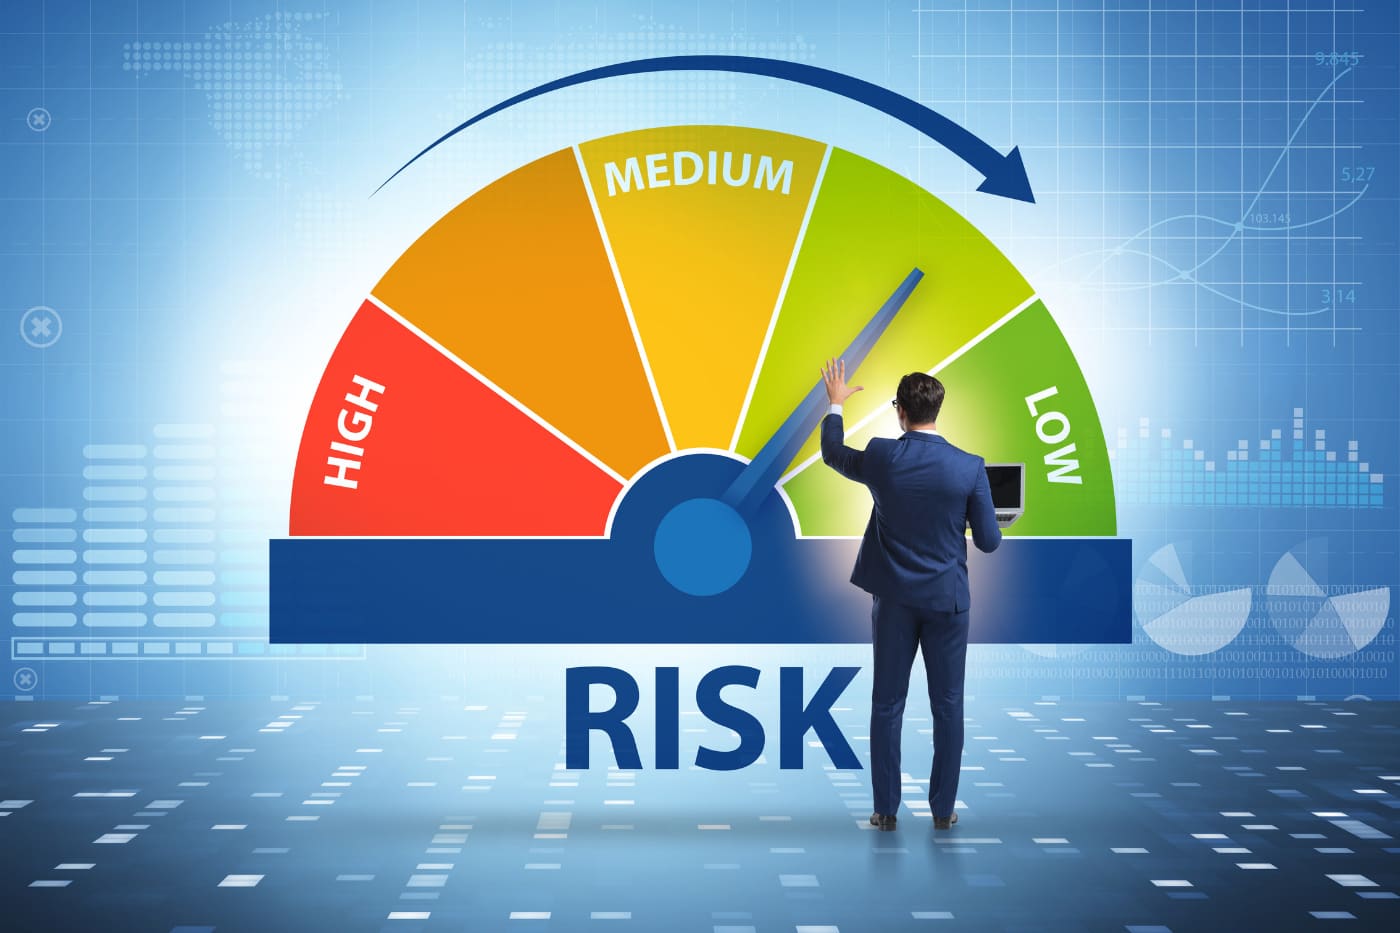 Бизнес может обжаловать категорию риска